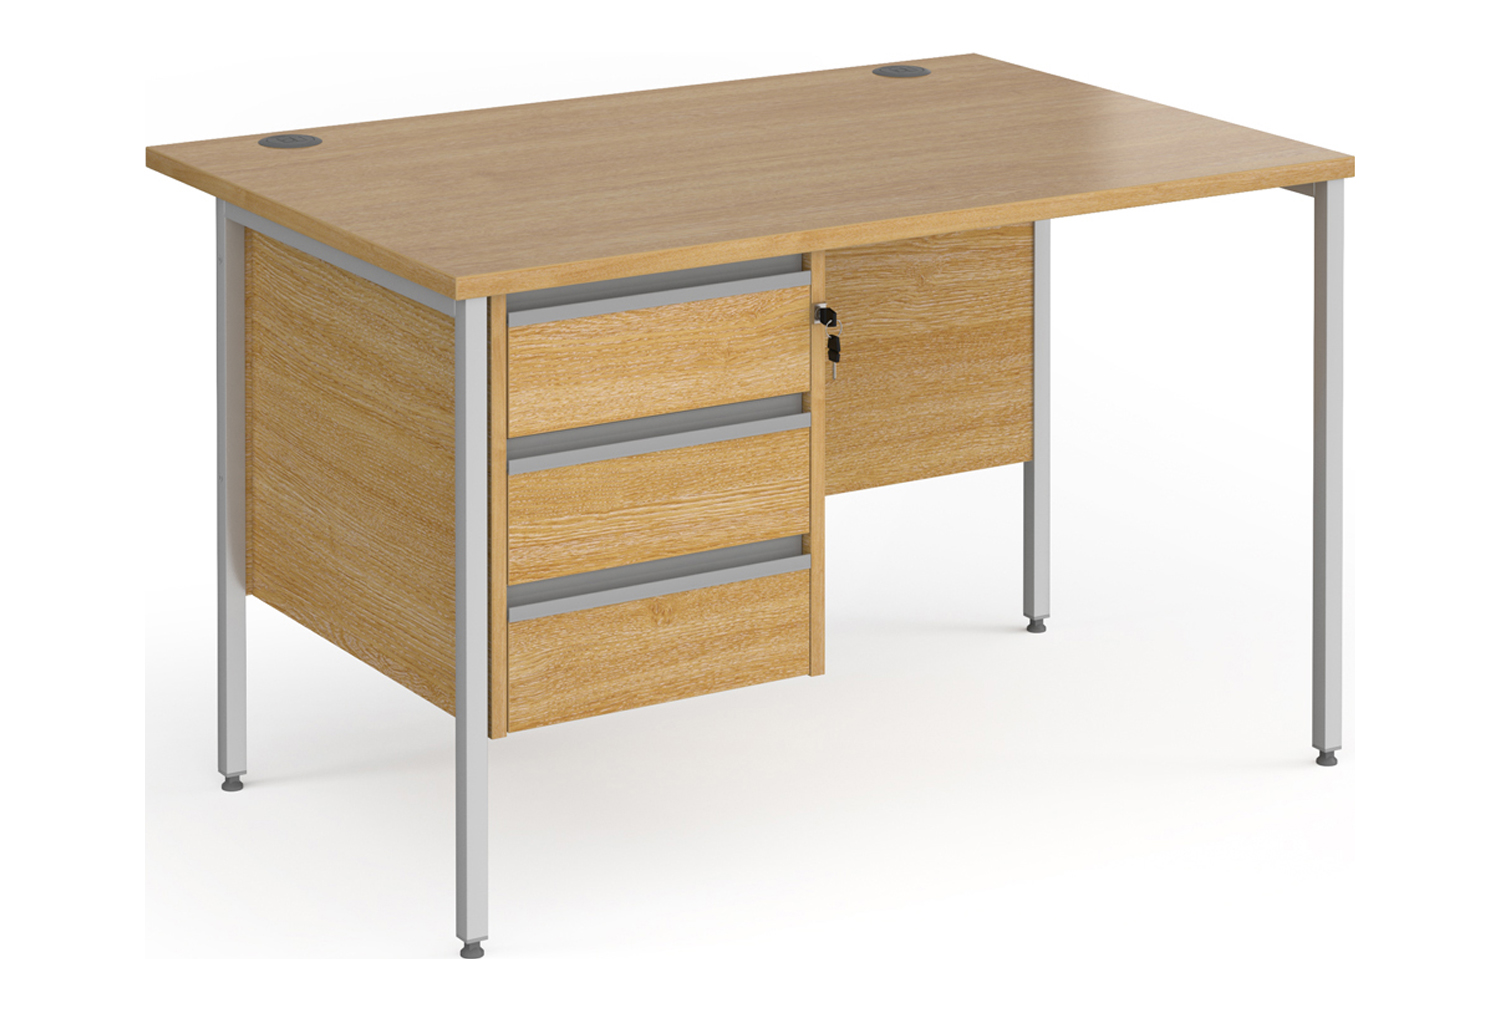 Value Line Classic+ Rectangular H-Leg Office Desk 3 Drawers (Silver Leg), 120wx80dx73h (cm), Oak, Fully Installed